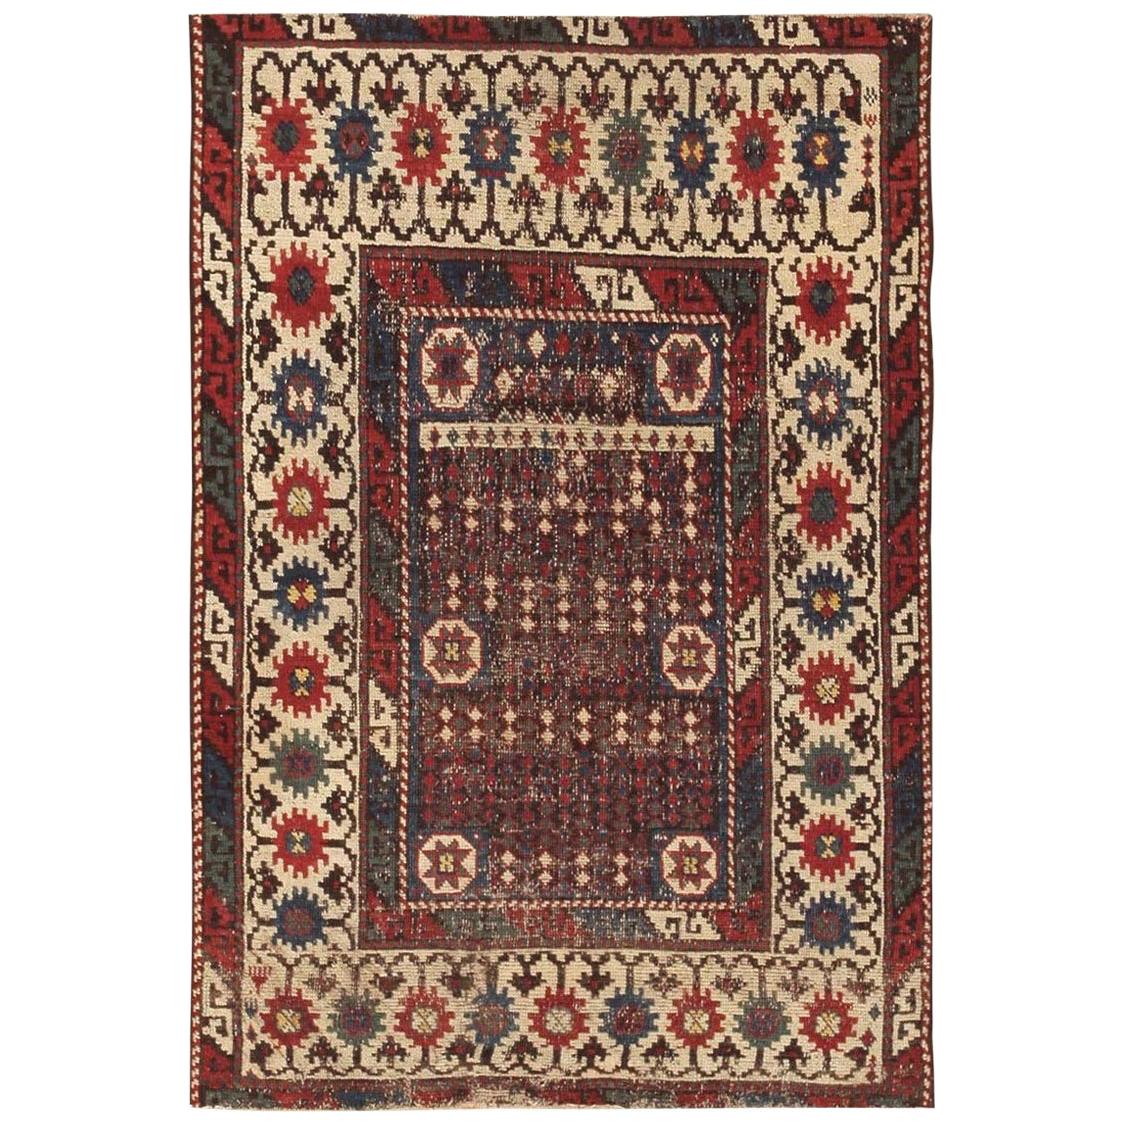 Antique Caucasian Avar Rug. Size: 2' 7" x 3' 10" For Sale